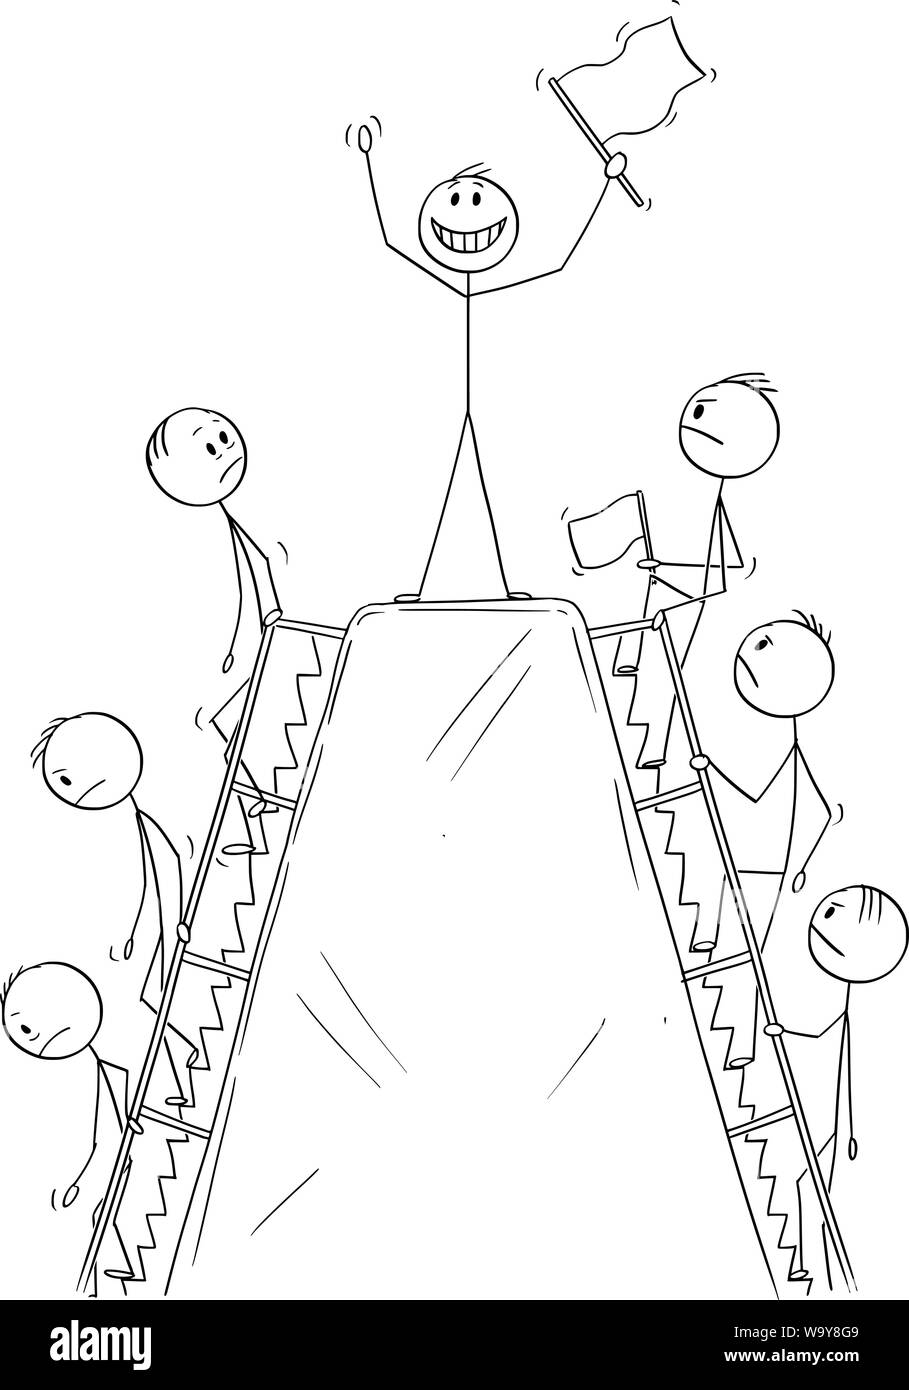 Vector cartoon stick figure dessin illustration conceptuelle de l'activité des hommes, ou des hommes d'escalade la colline de profiter de moment de succès sur la crête avant de descendre. Illustration de Vecteur